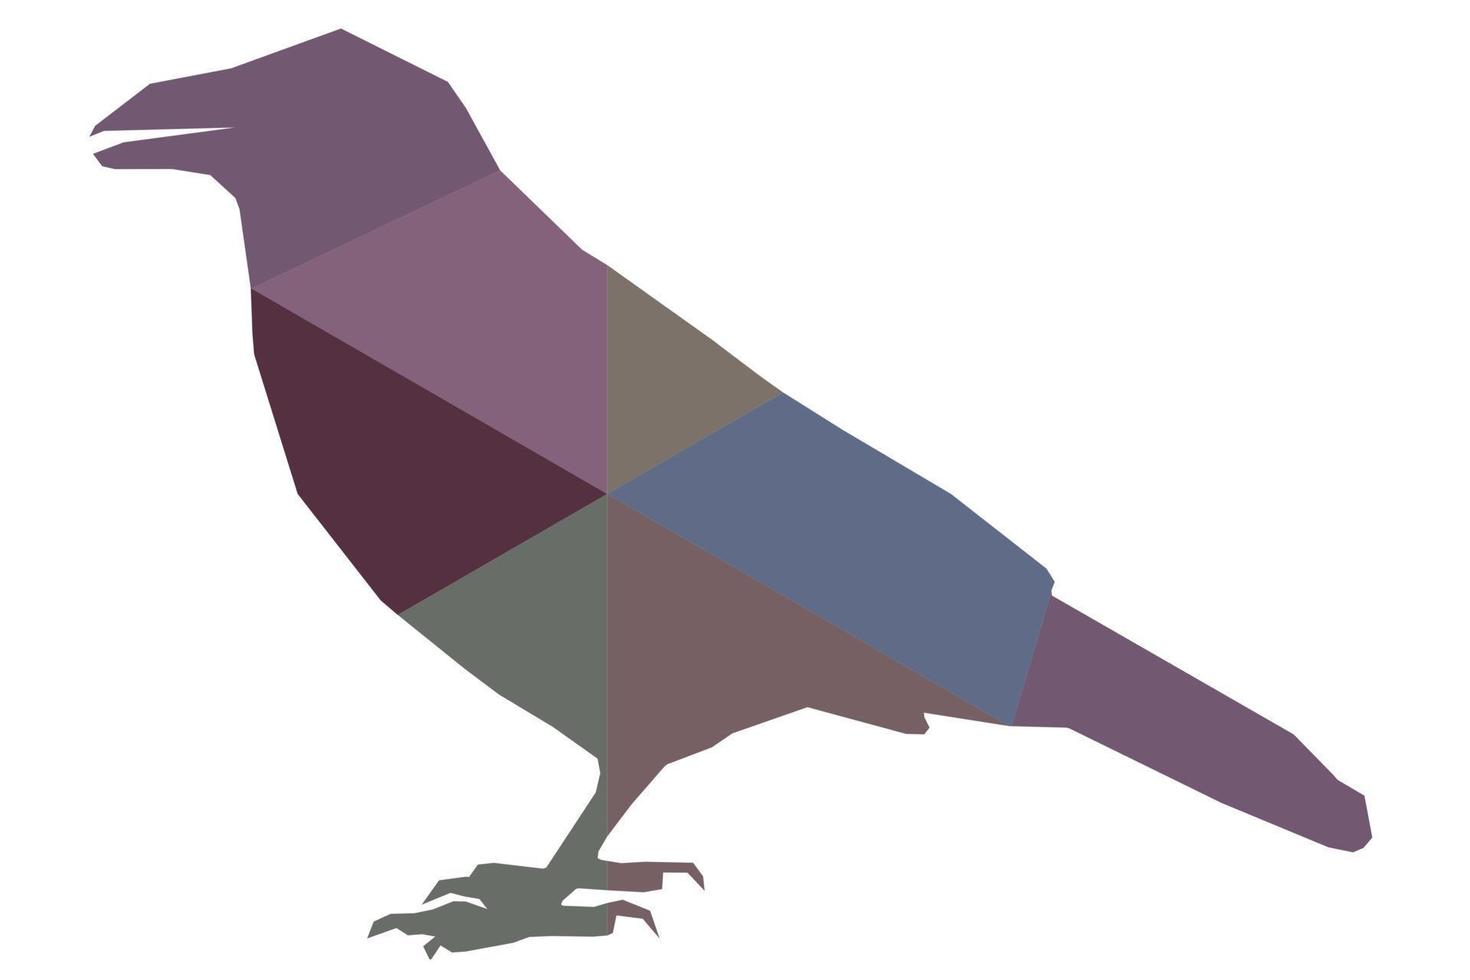 vektor korp, gala, corvus stående, färgad silhuett av en vild fågel, polygonal abstraktion